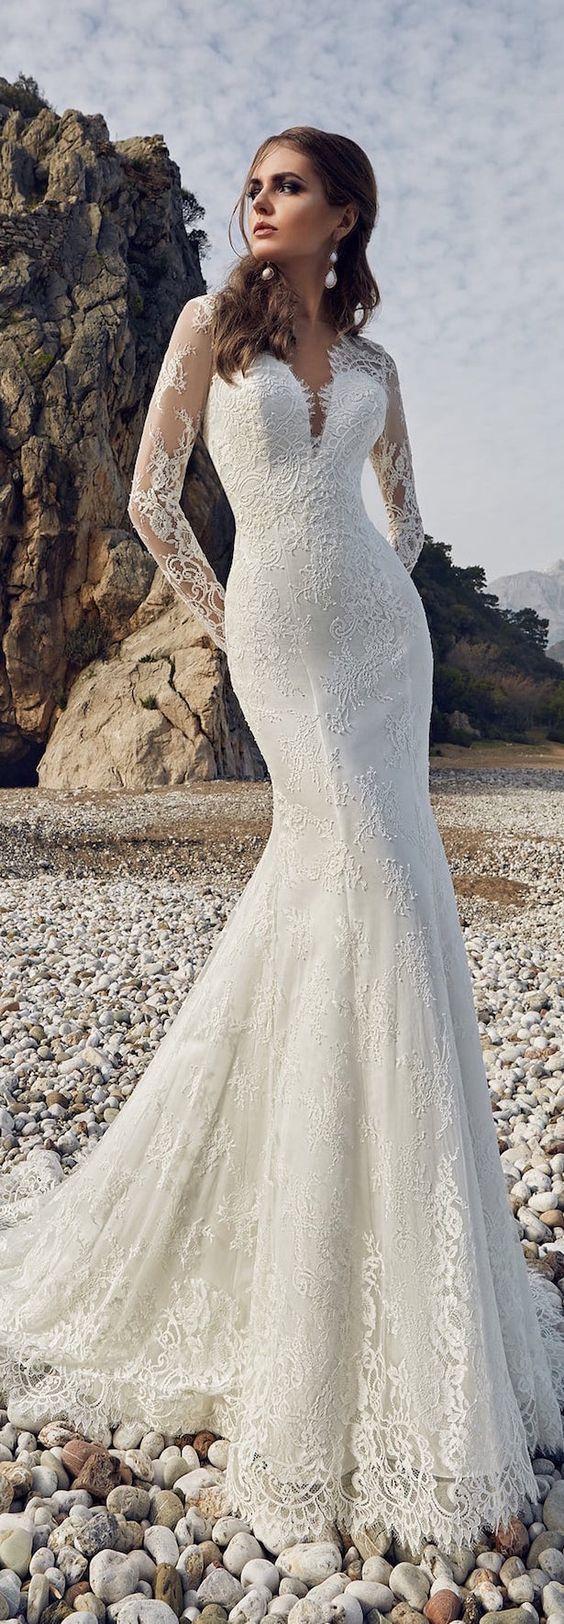 Mariage - Wedding Dress Inspiration - Lanesta Bridal